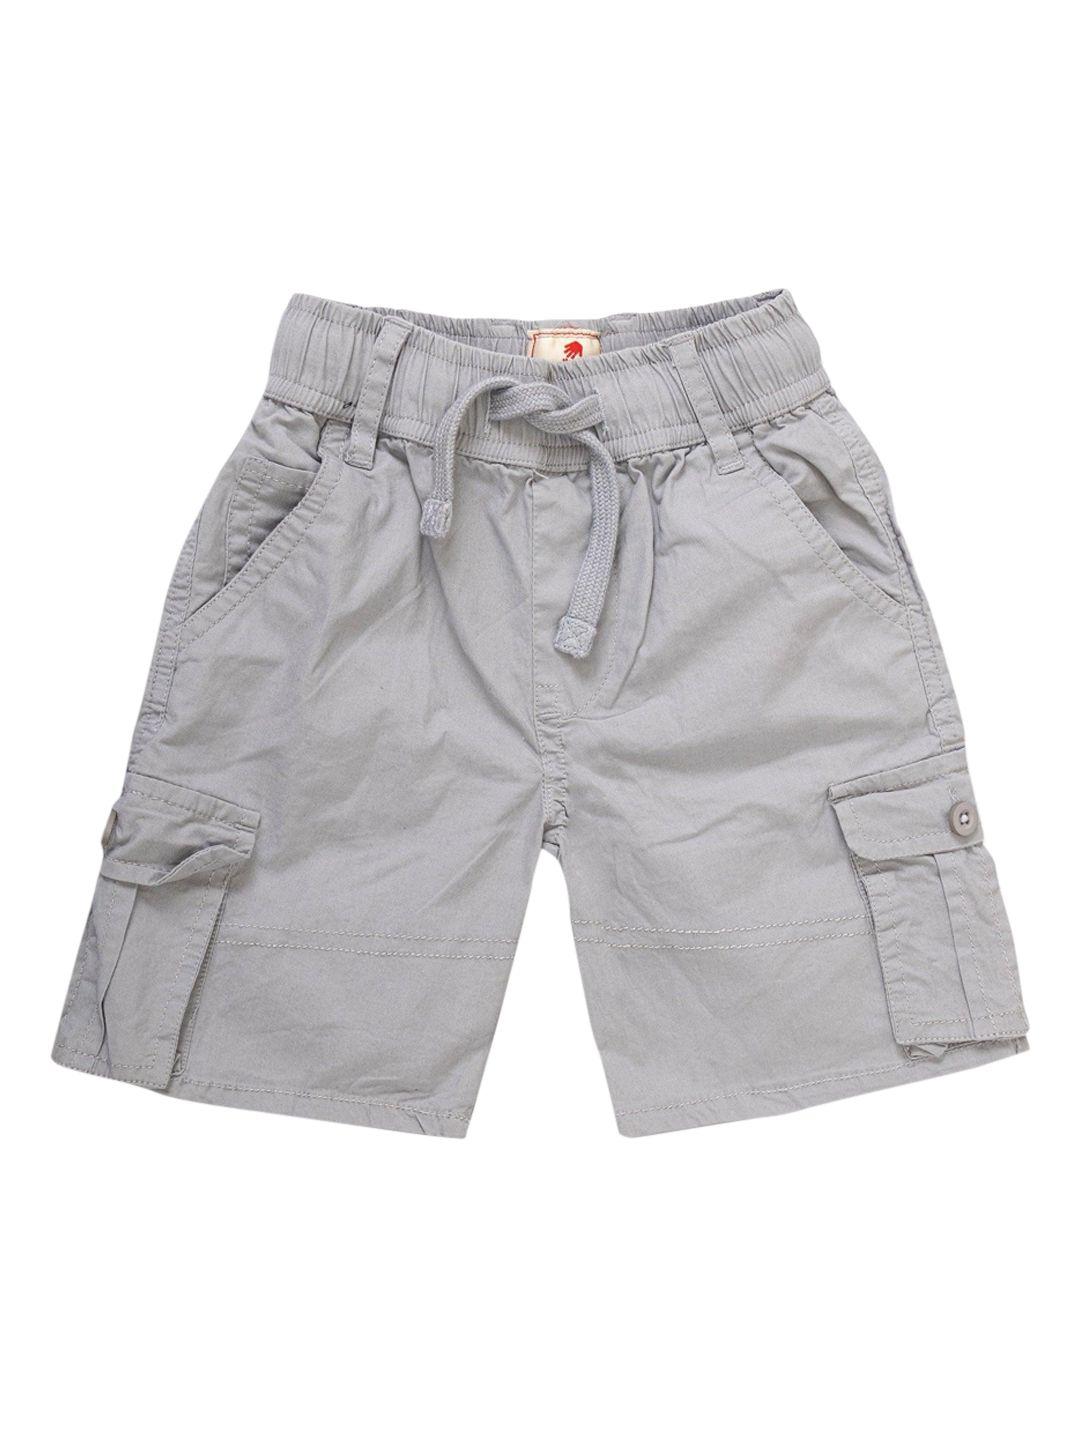 juscubs boys outdoor cargo cotton shorts